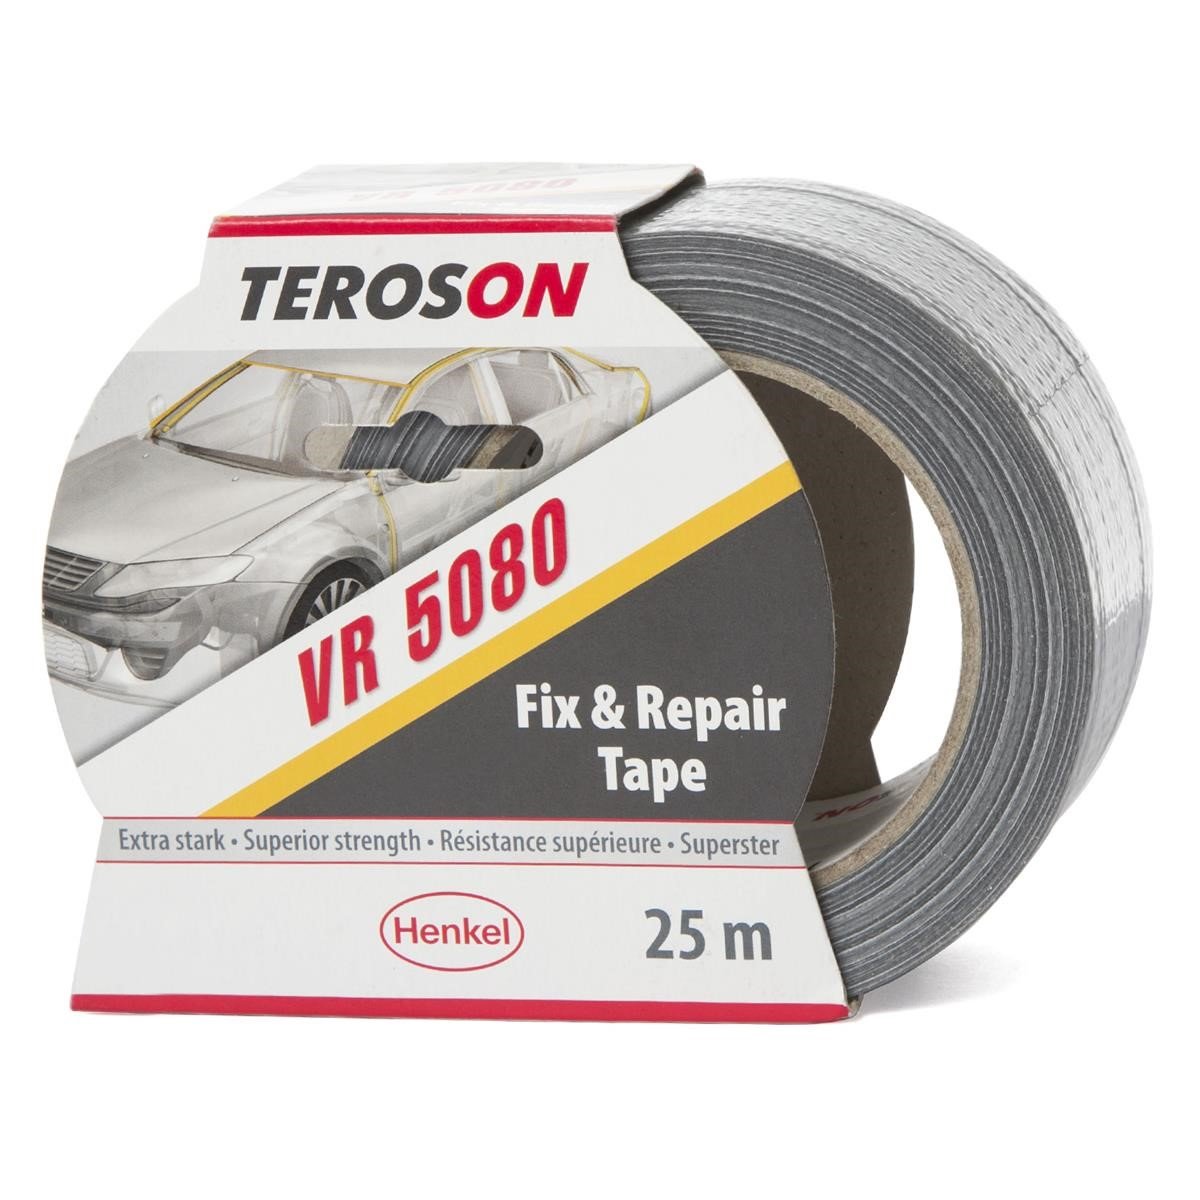 Loctite duct tape TEROSON VR 5080 25 m